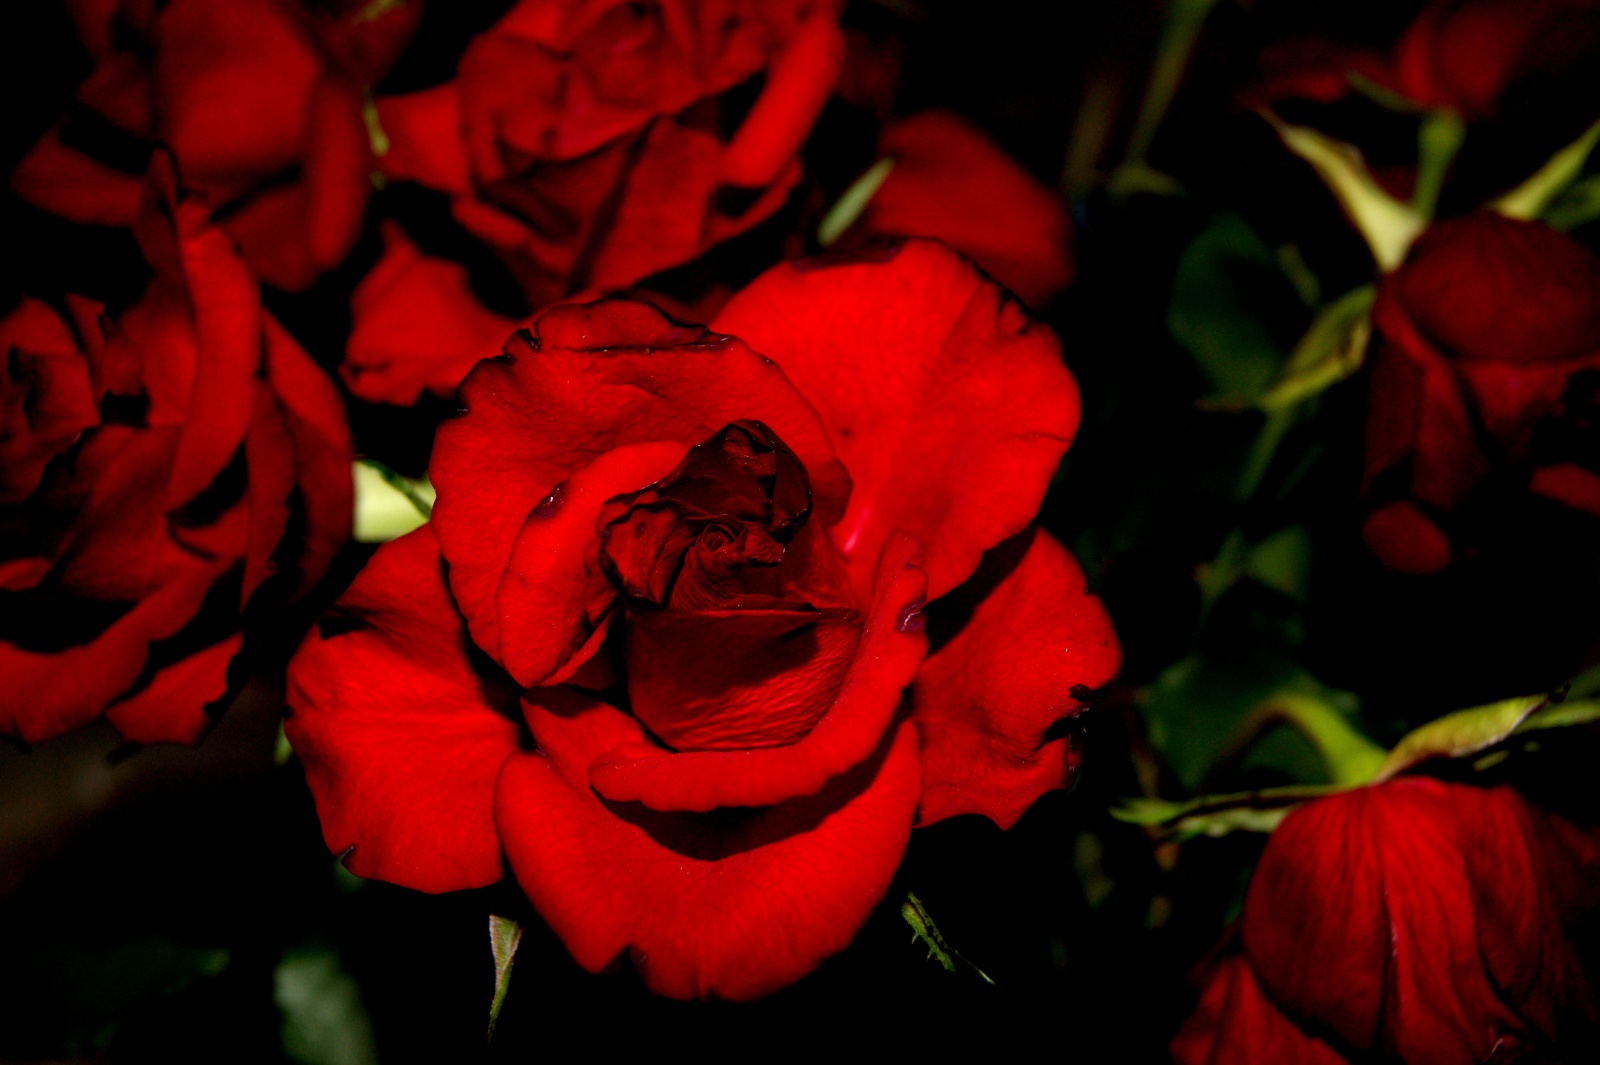 Passionate rose